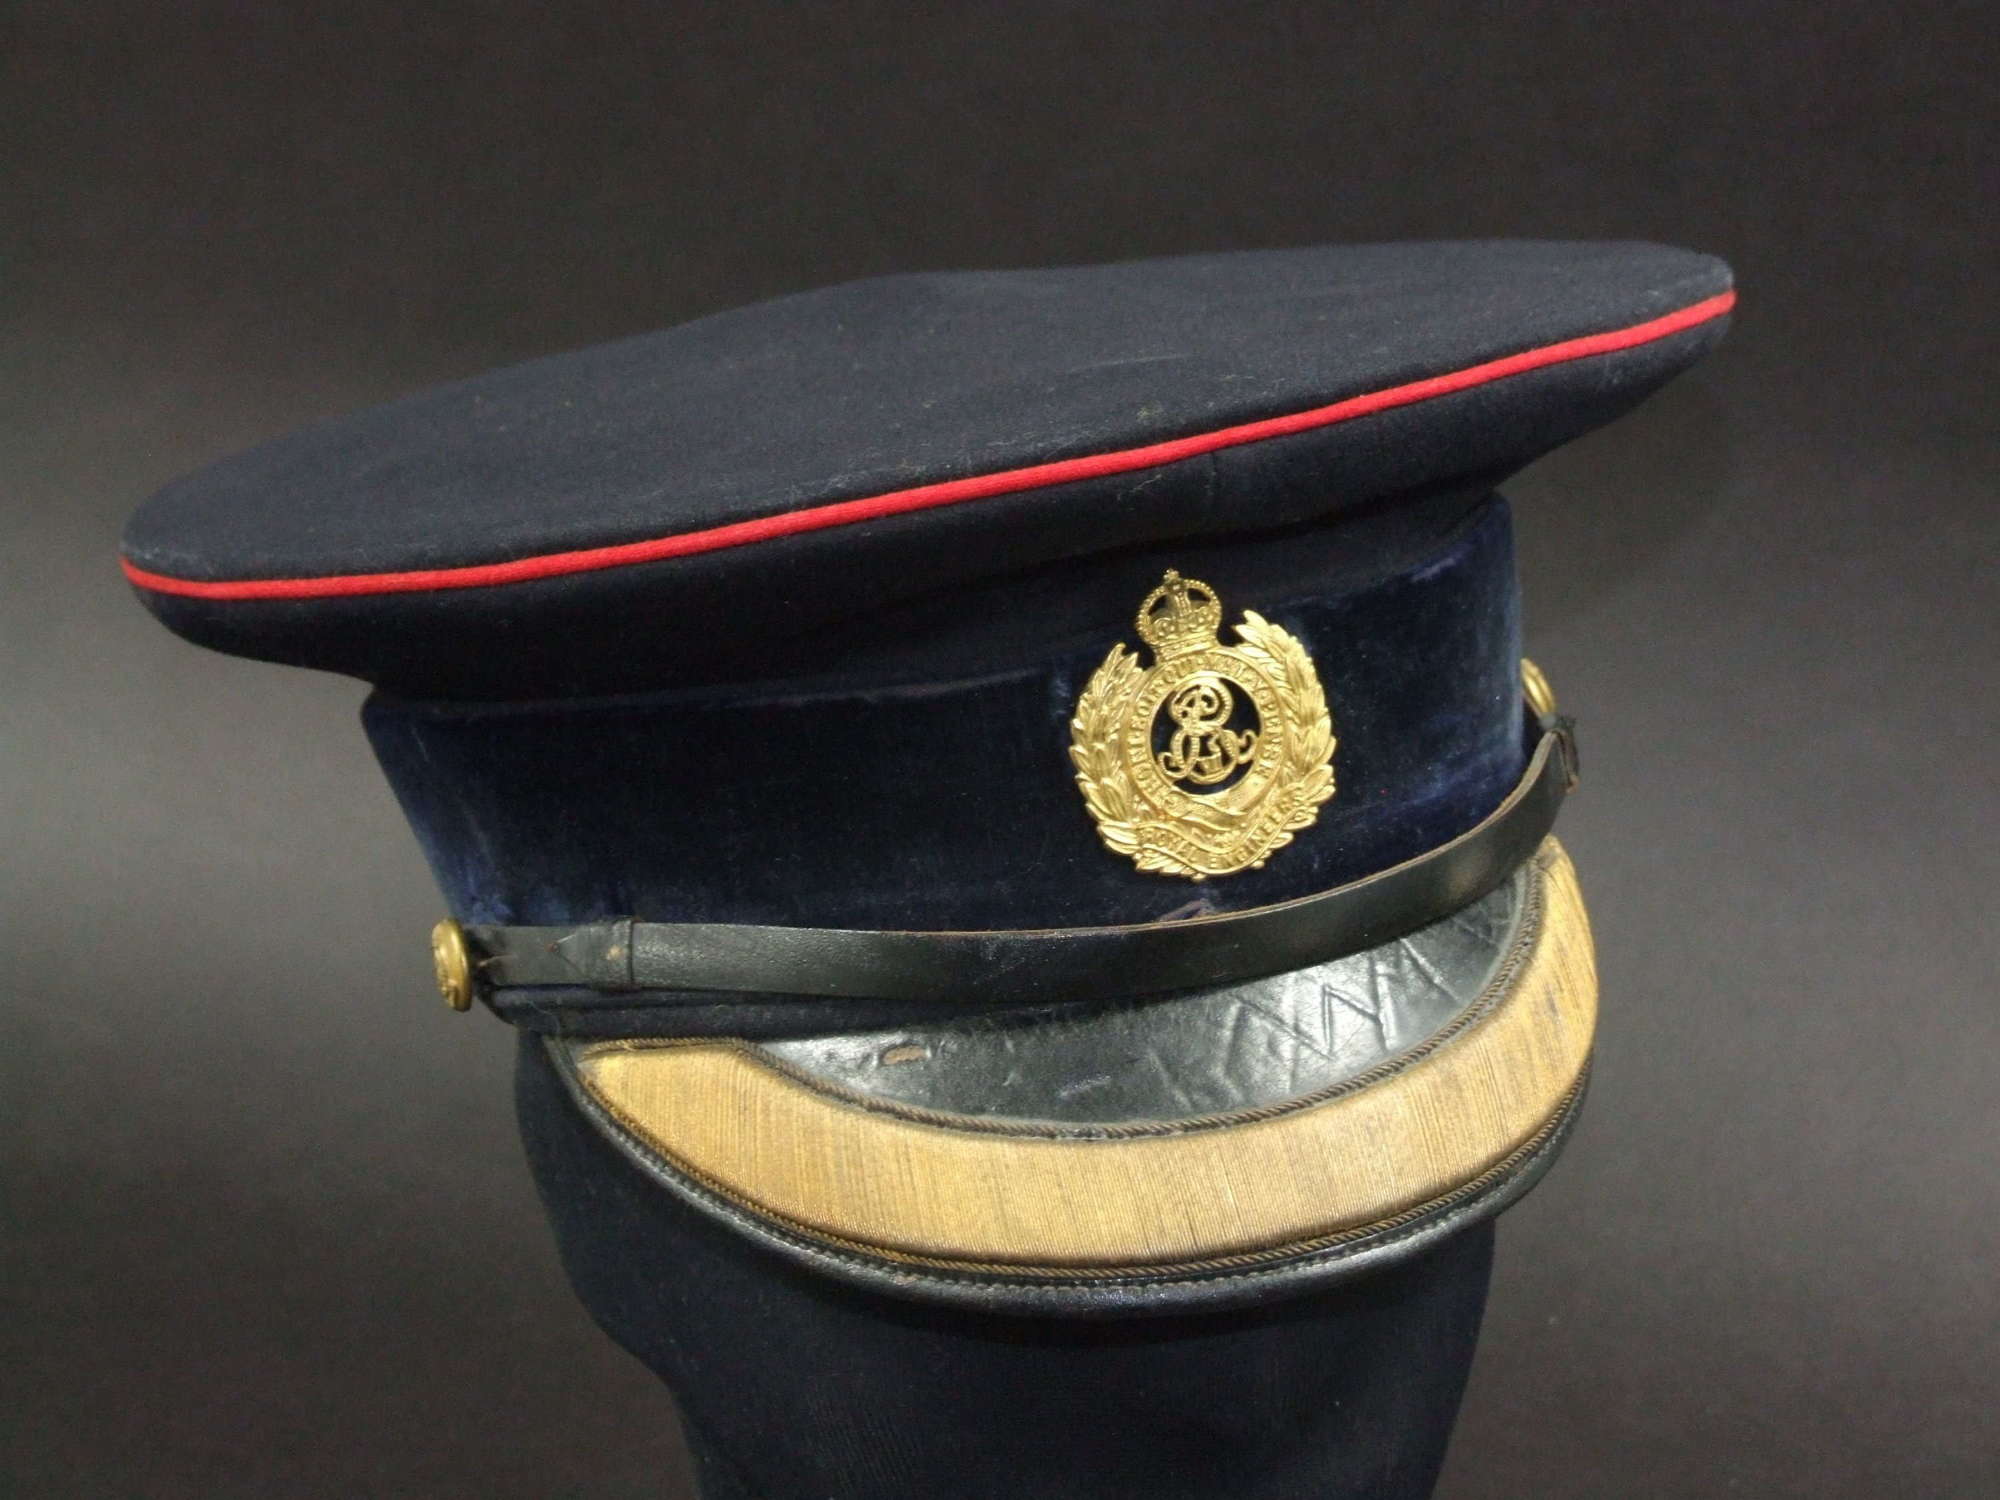 Edward V11 Royal Engineers Officer's Dress Cap